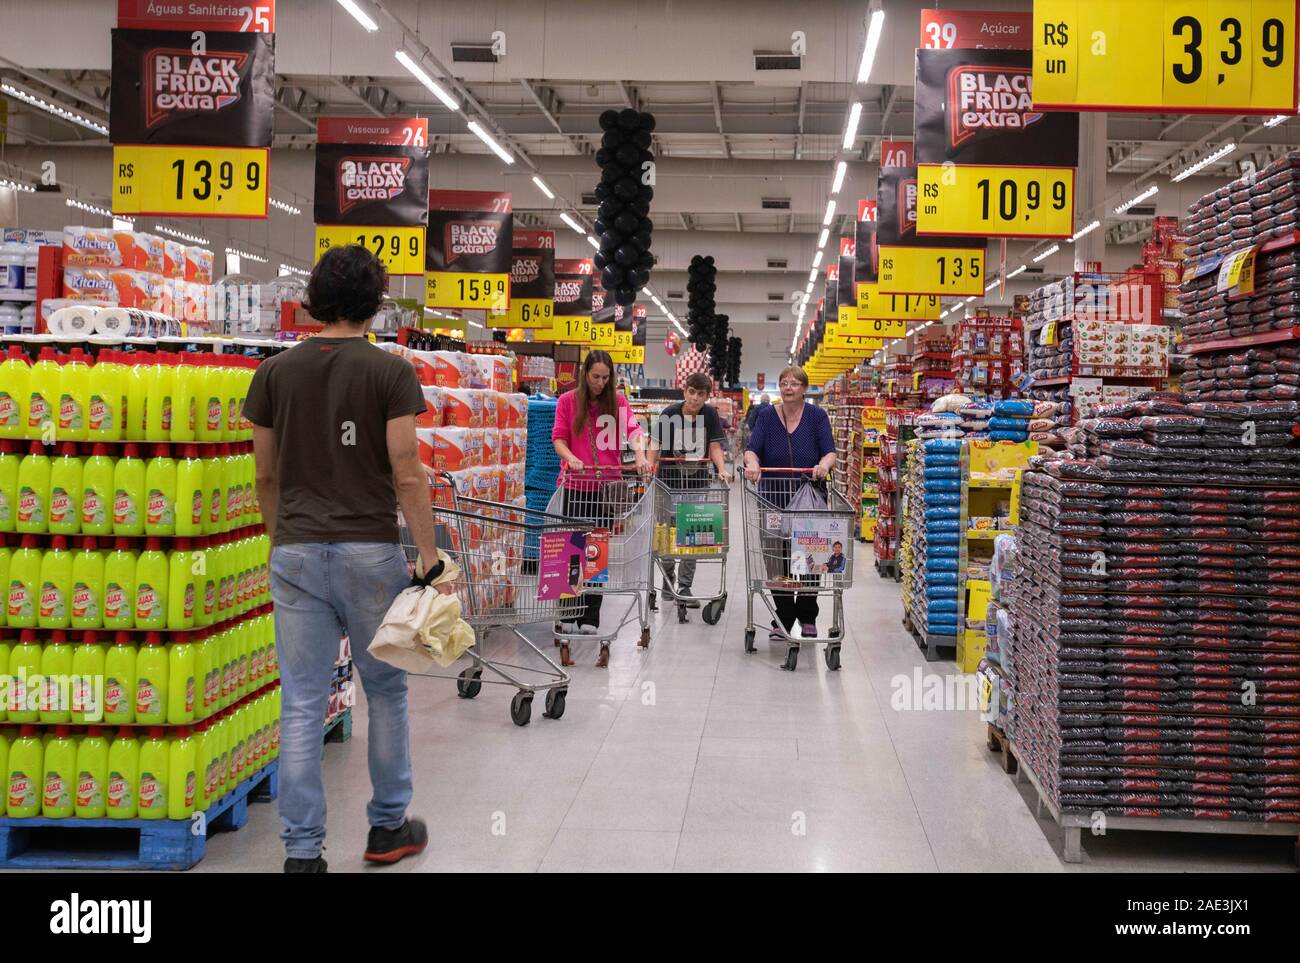 SÃO PAULO, SP - 28.11.2019: ALTA DE PREÇOS NOS SUPERMERCADOS - Supermarket  movement in the south of